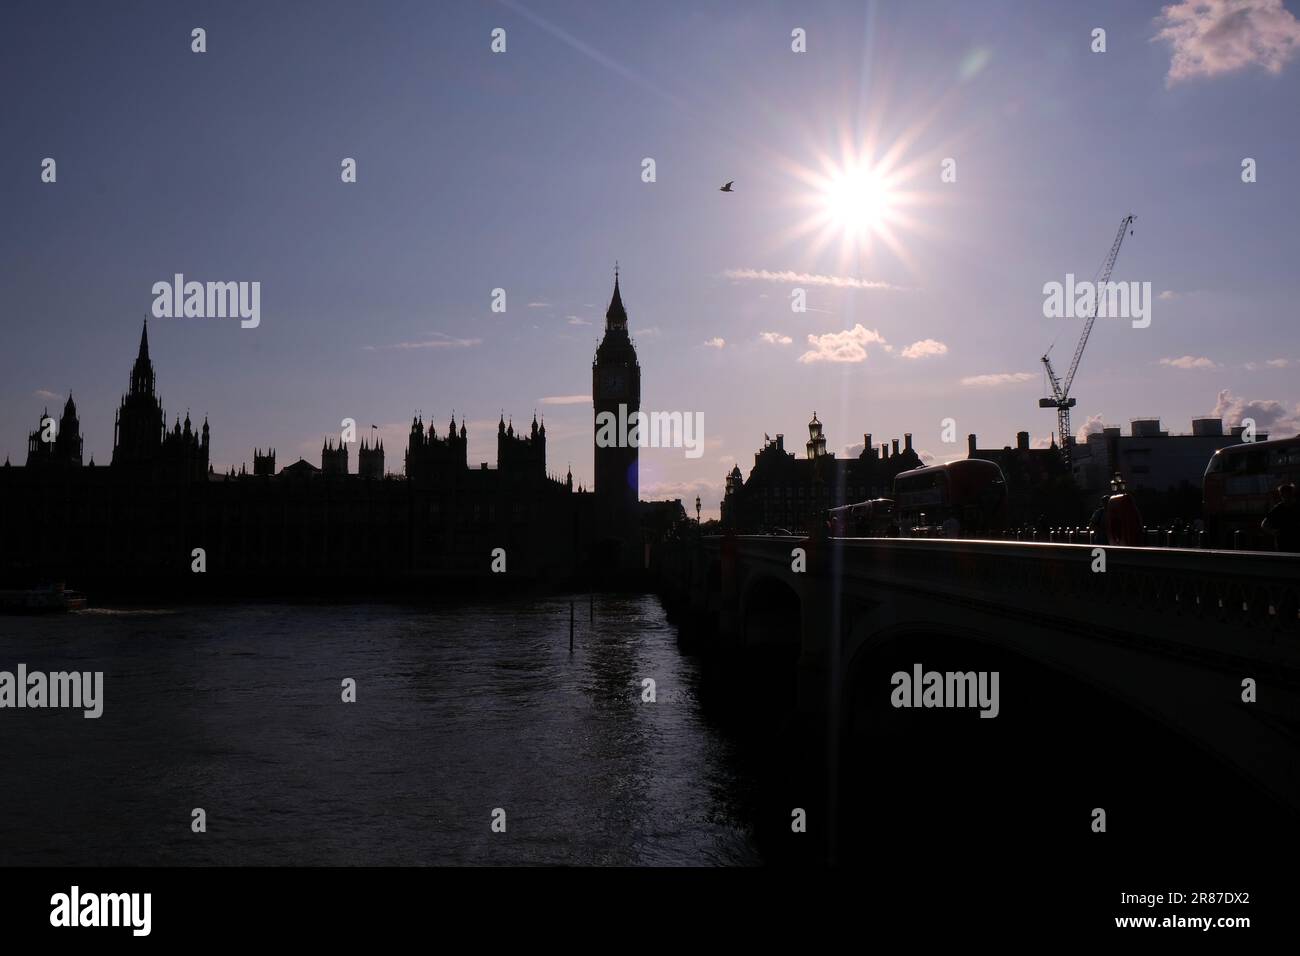 Les chambres du Parlement en silhouette avec le soleil vu dans un effet étoilé. Les députés à l'intérieur débattent et votent sur le rapport Partygate tard dans la soirée. Banque D'Images